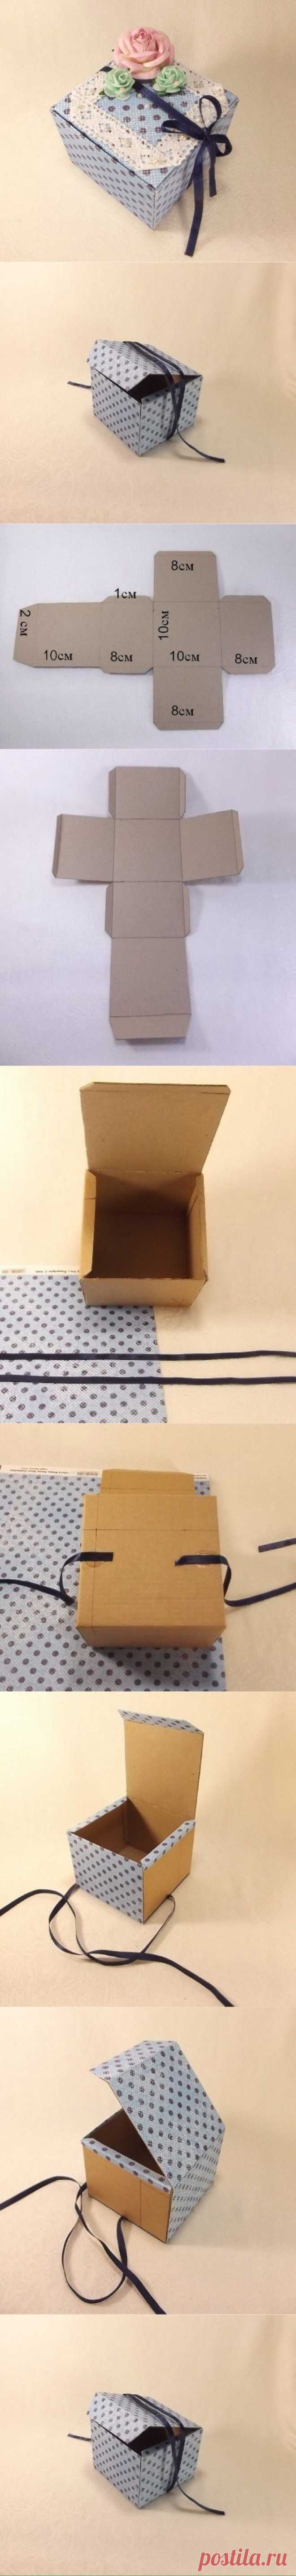 DIY礼品盒…_来自薄荷绿马卡龙的图片分享-堆糖